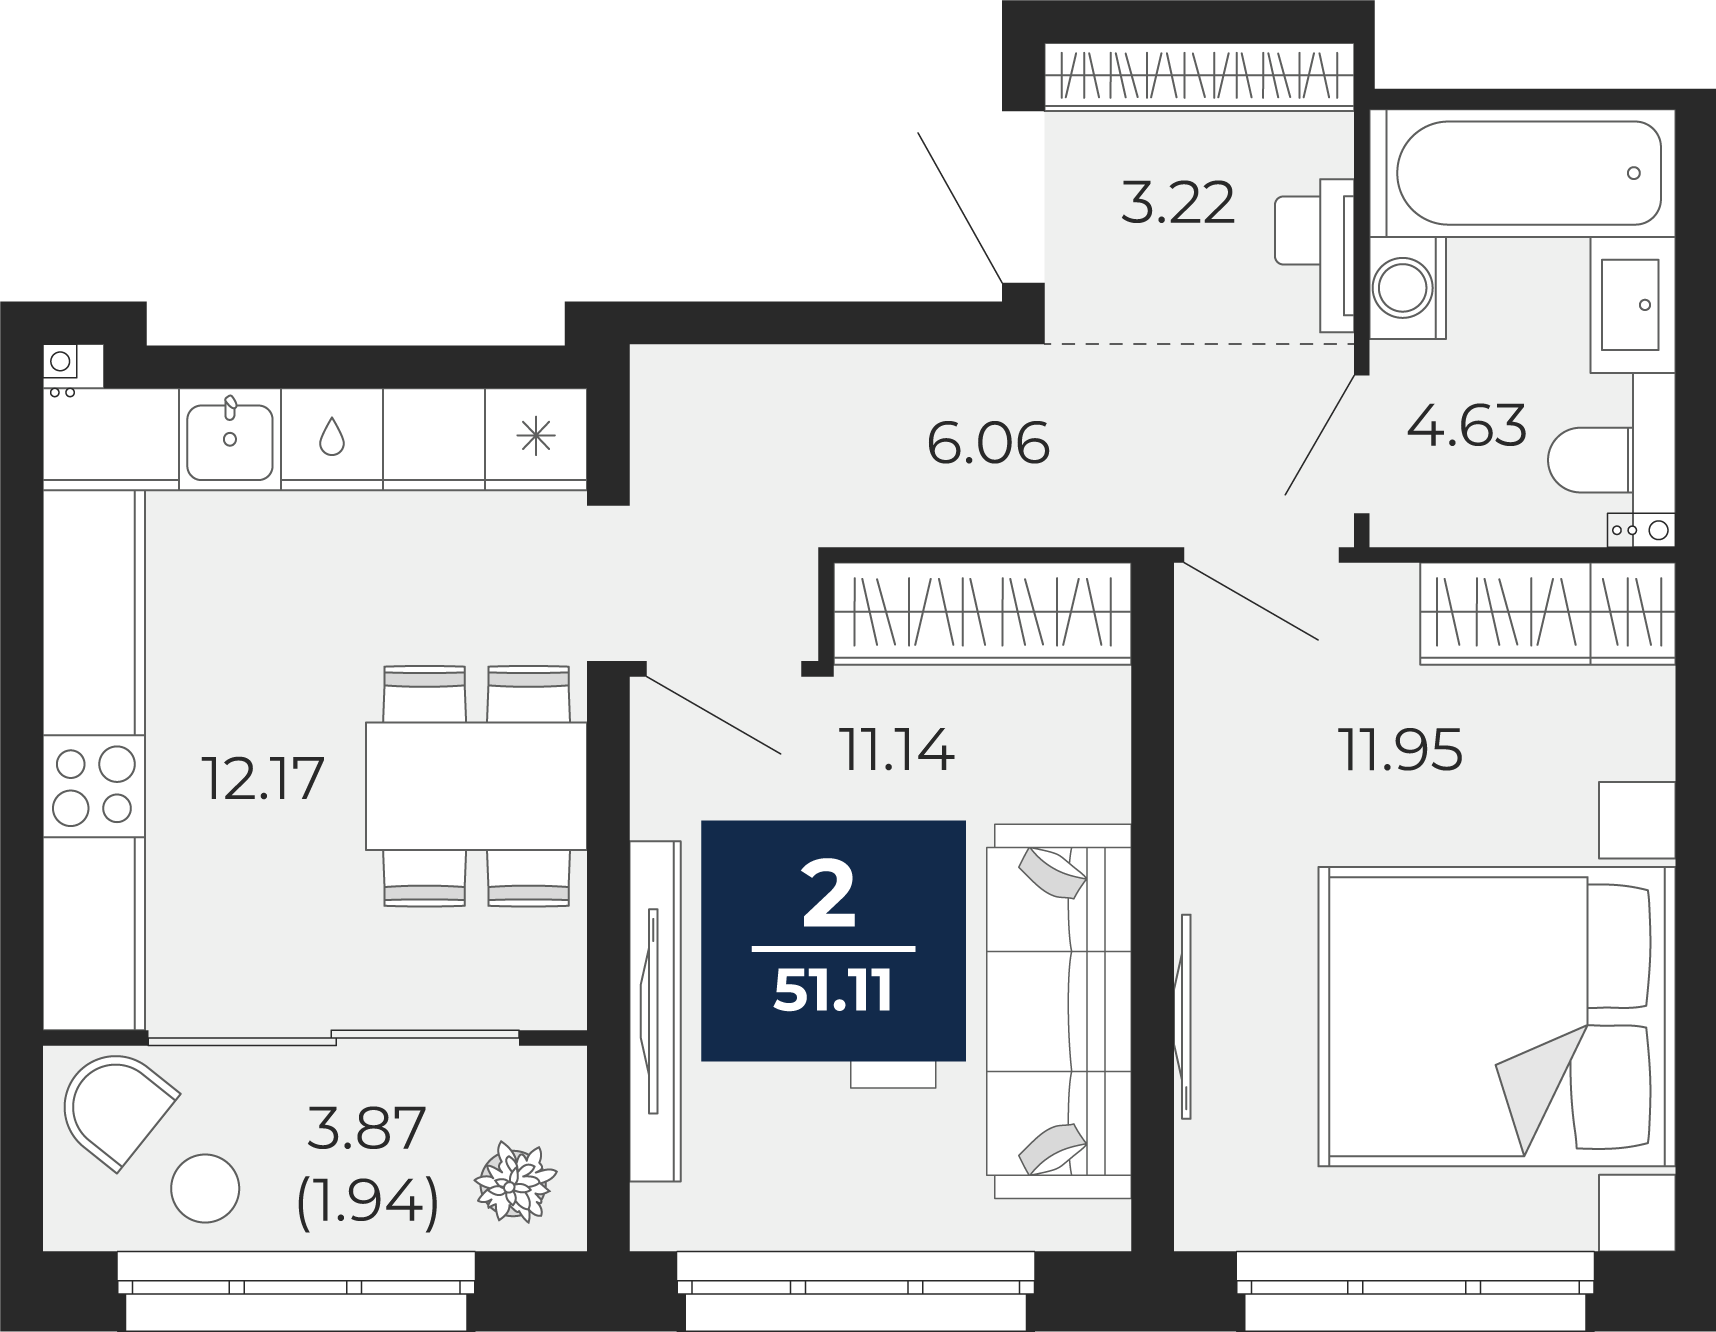 Квартира № 34, 2-комнатная, 51.11 кв. м, 8 этаж